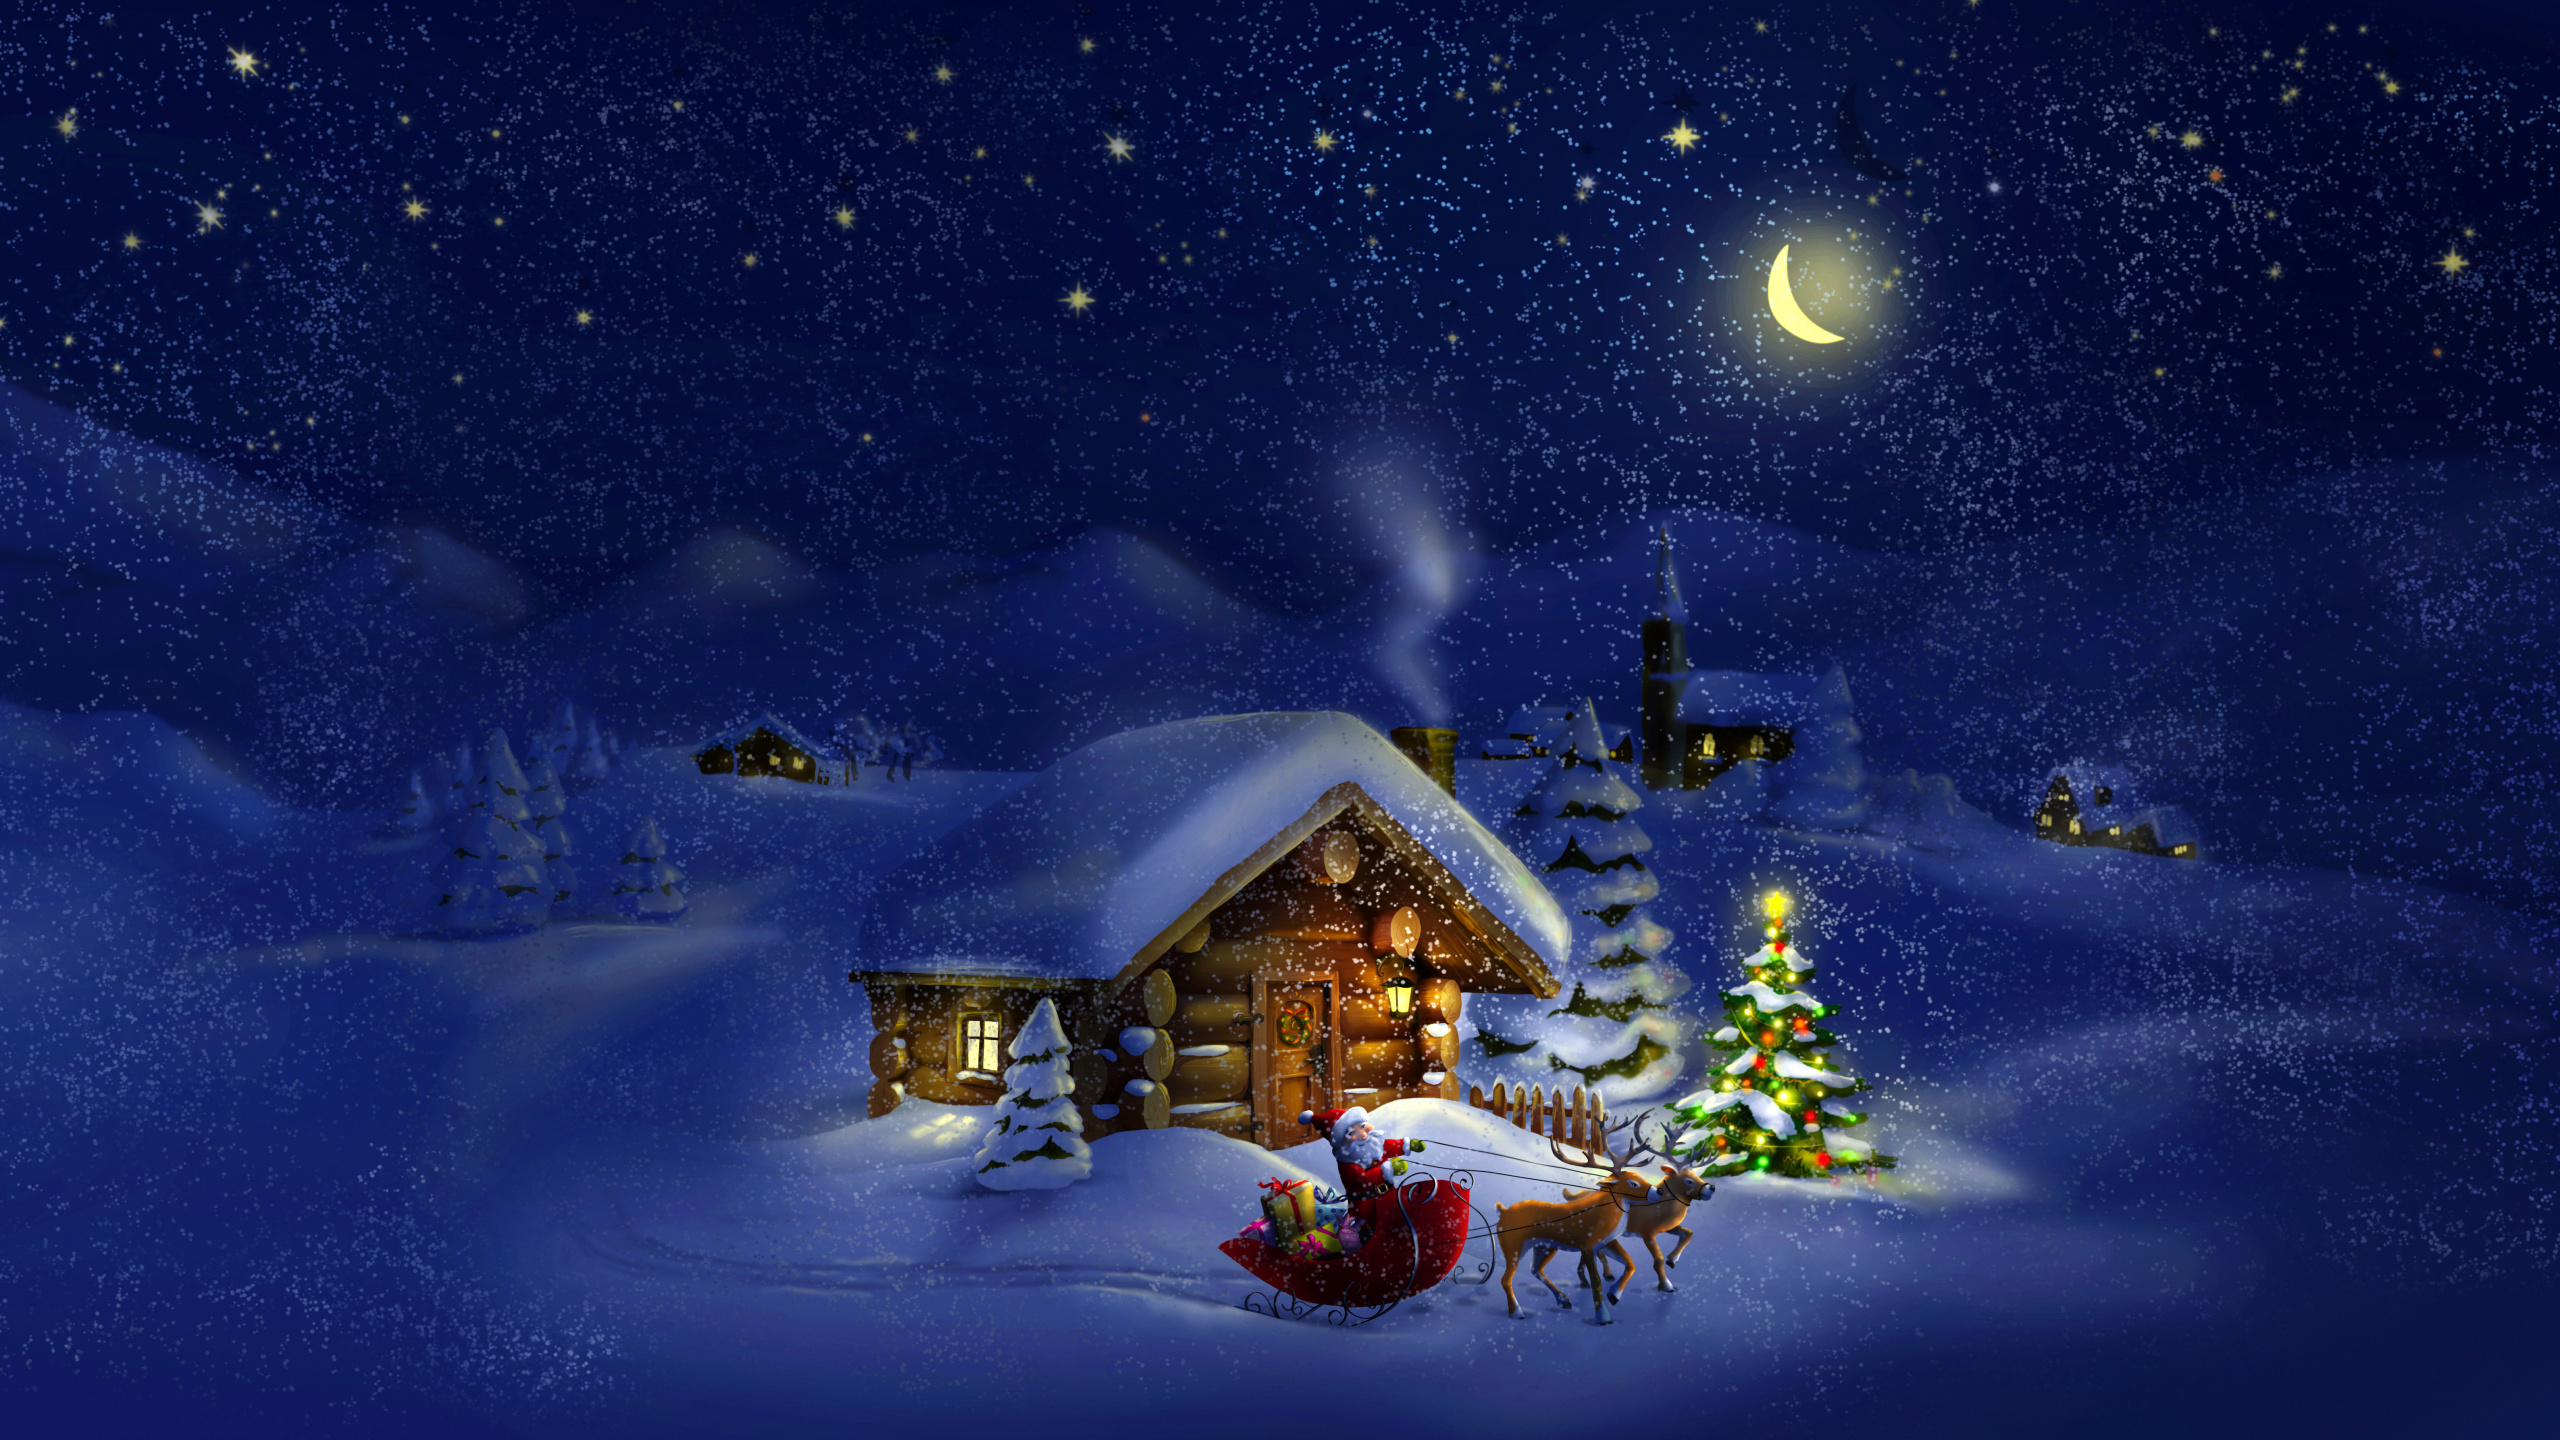 Le Jour De Noël, Santa Claus, Hiver, Neige, Nuit. Wallpaper in 2560x1440 Resolution